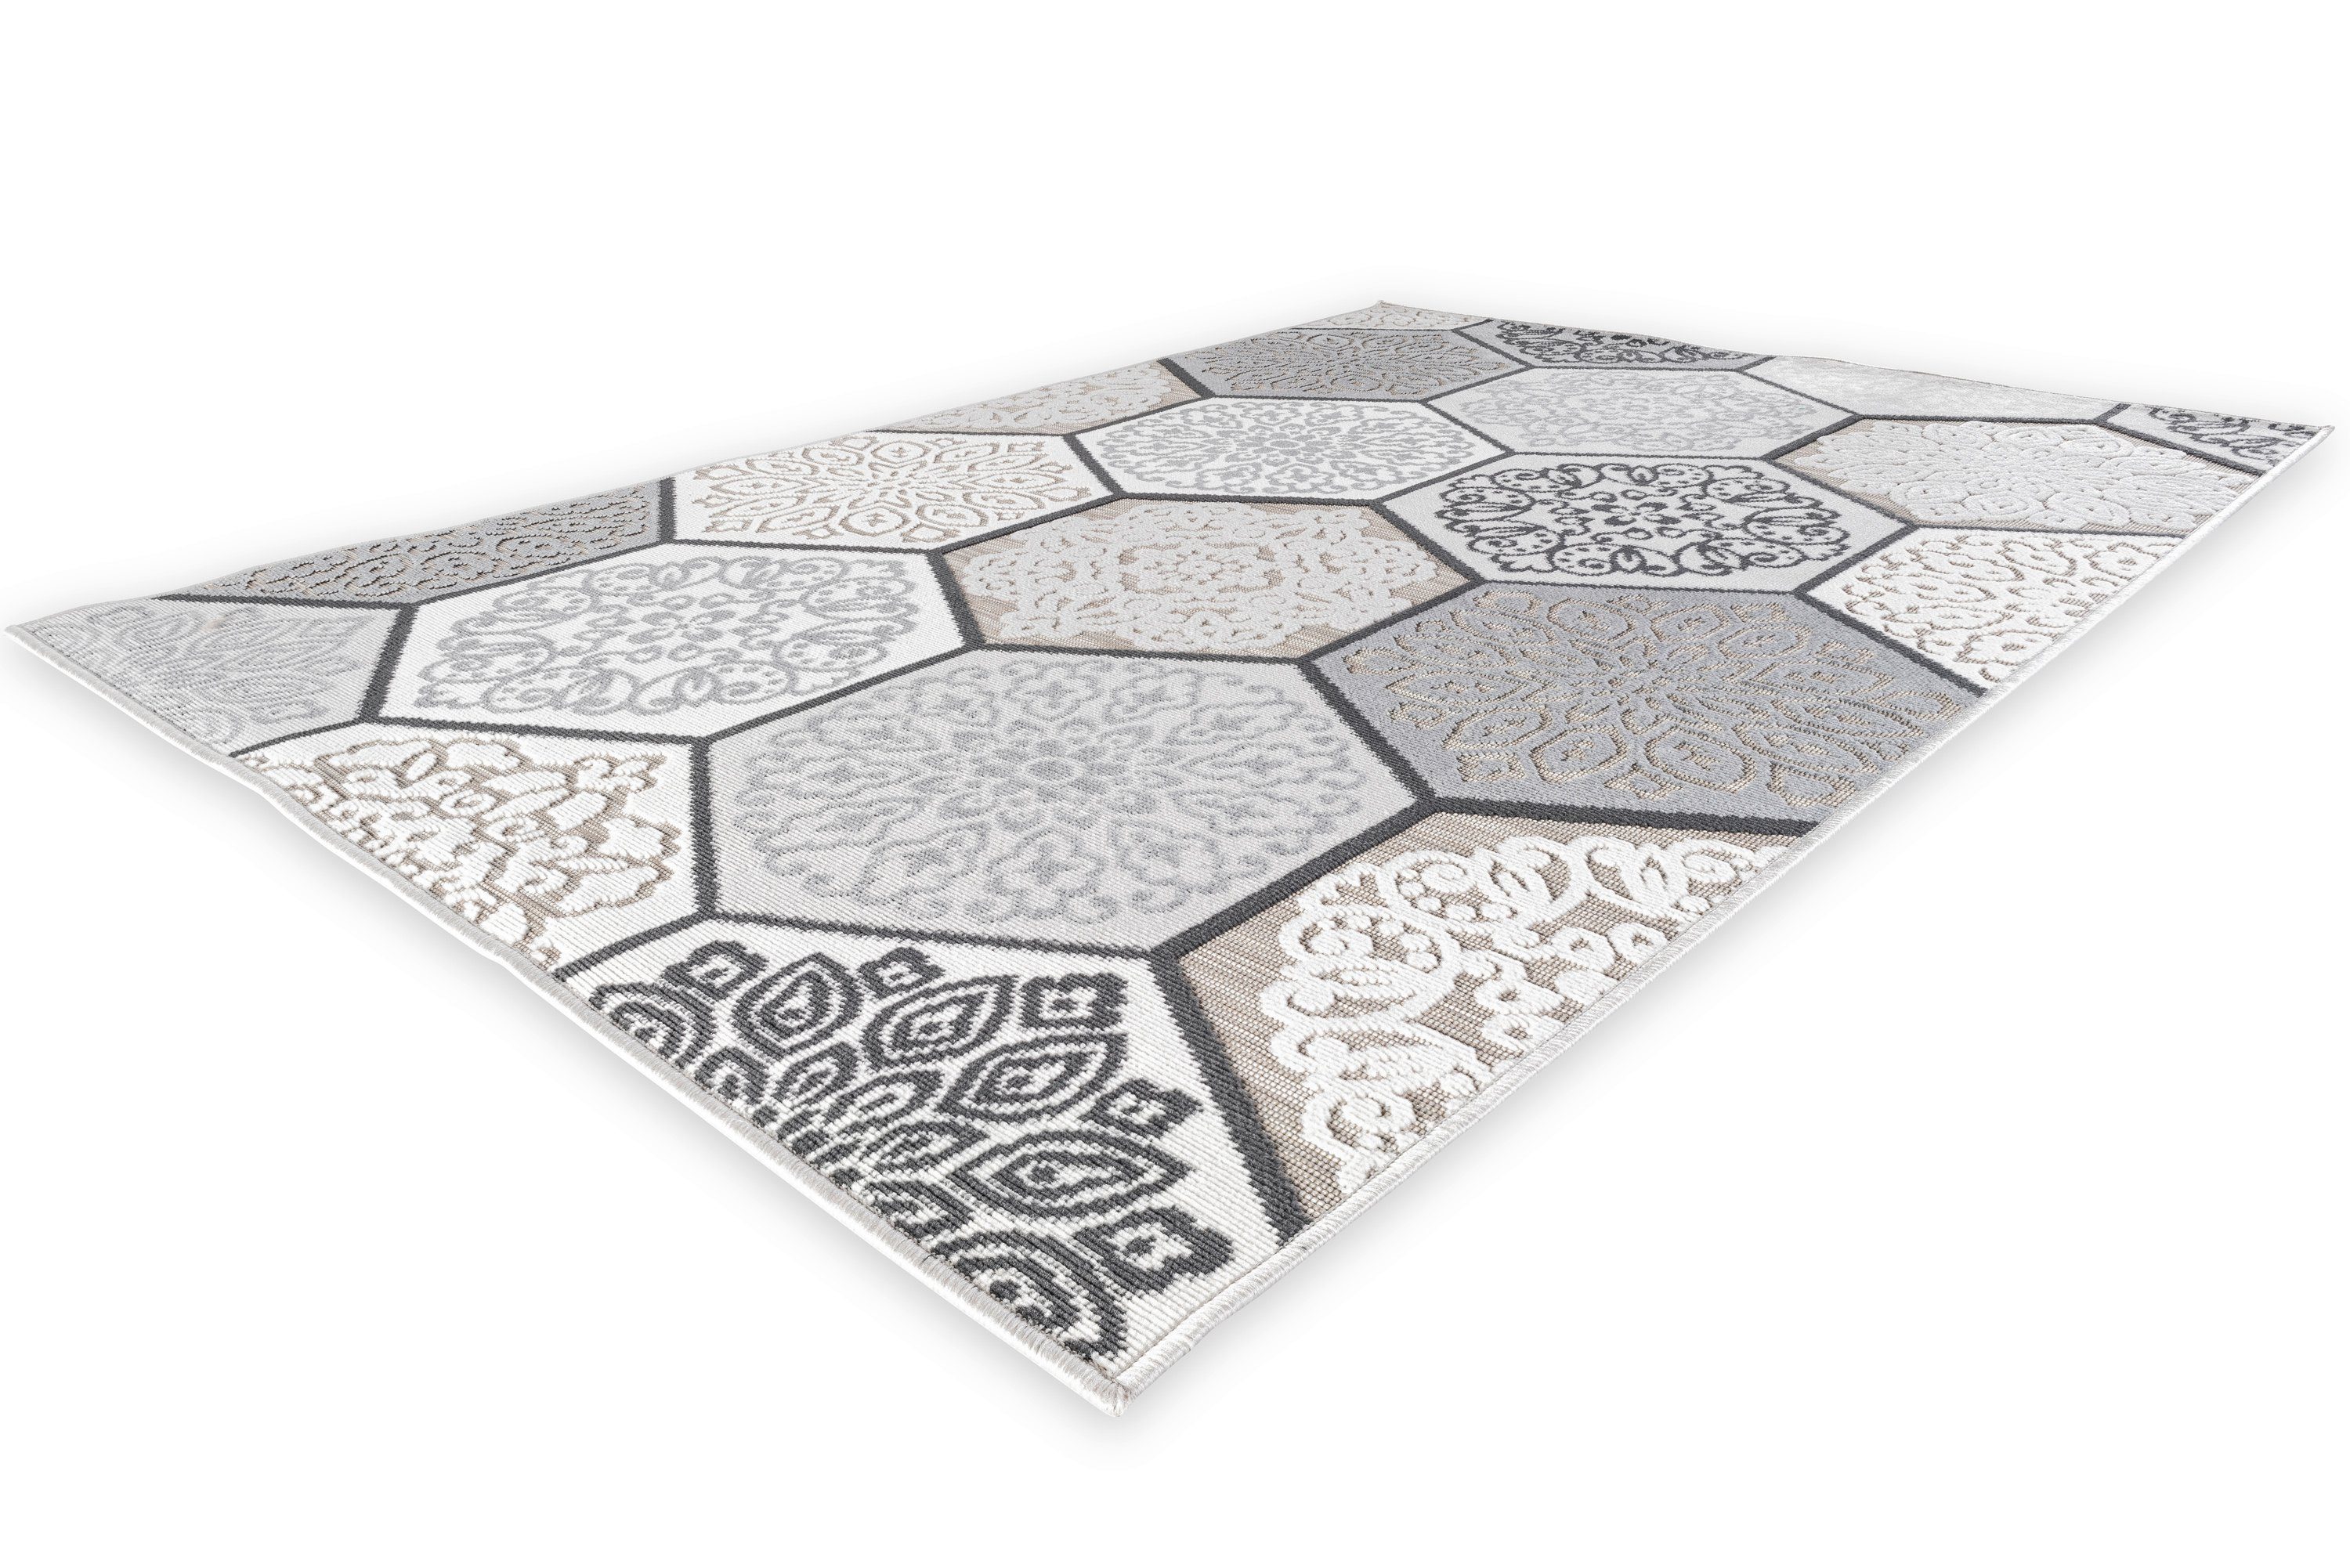 Teppich In- und Outdoor-Teppich Classic Hexagon Tiles, 160x230 cm für Innen und Außen, DomDeco Grau